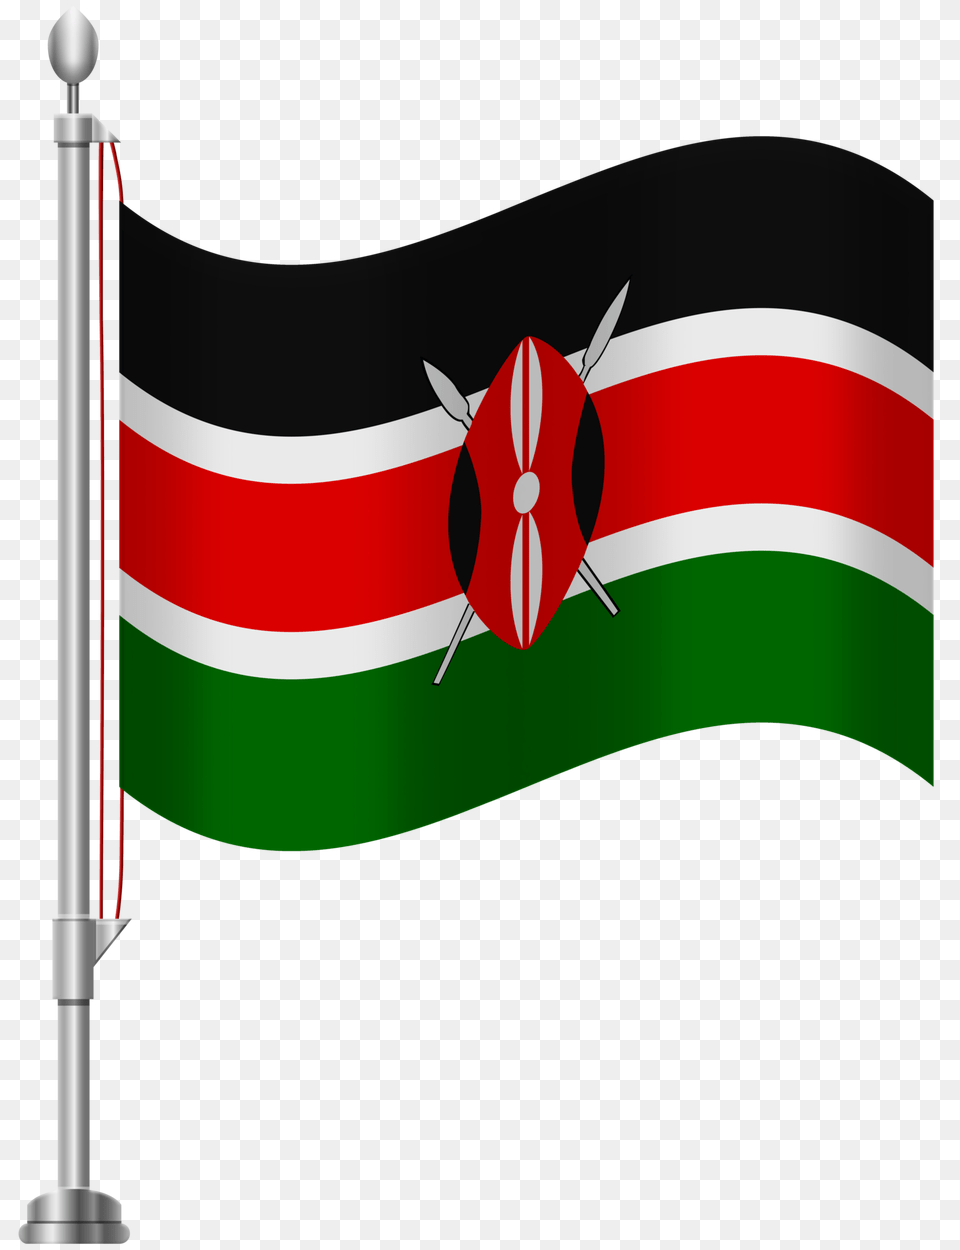 Kenya Flag Clip Art, Dynamite, Weapon Png Image